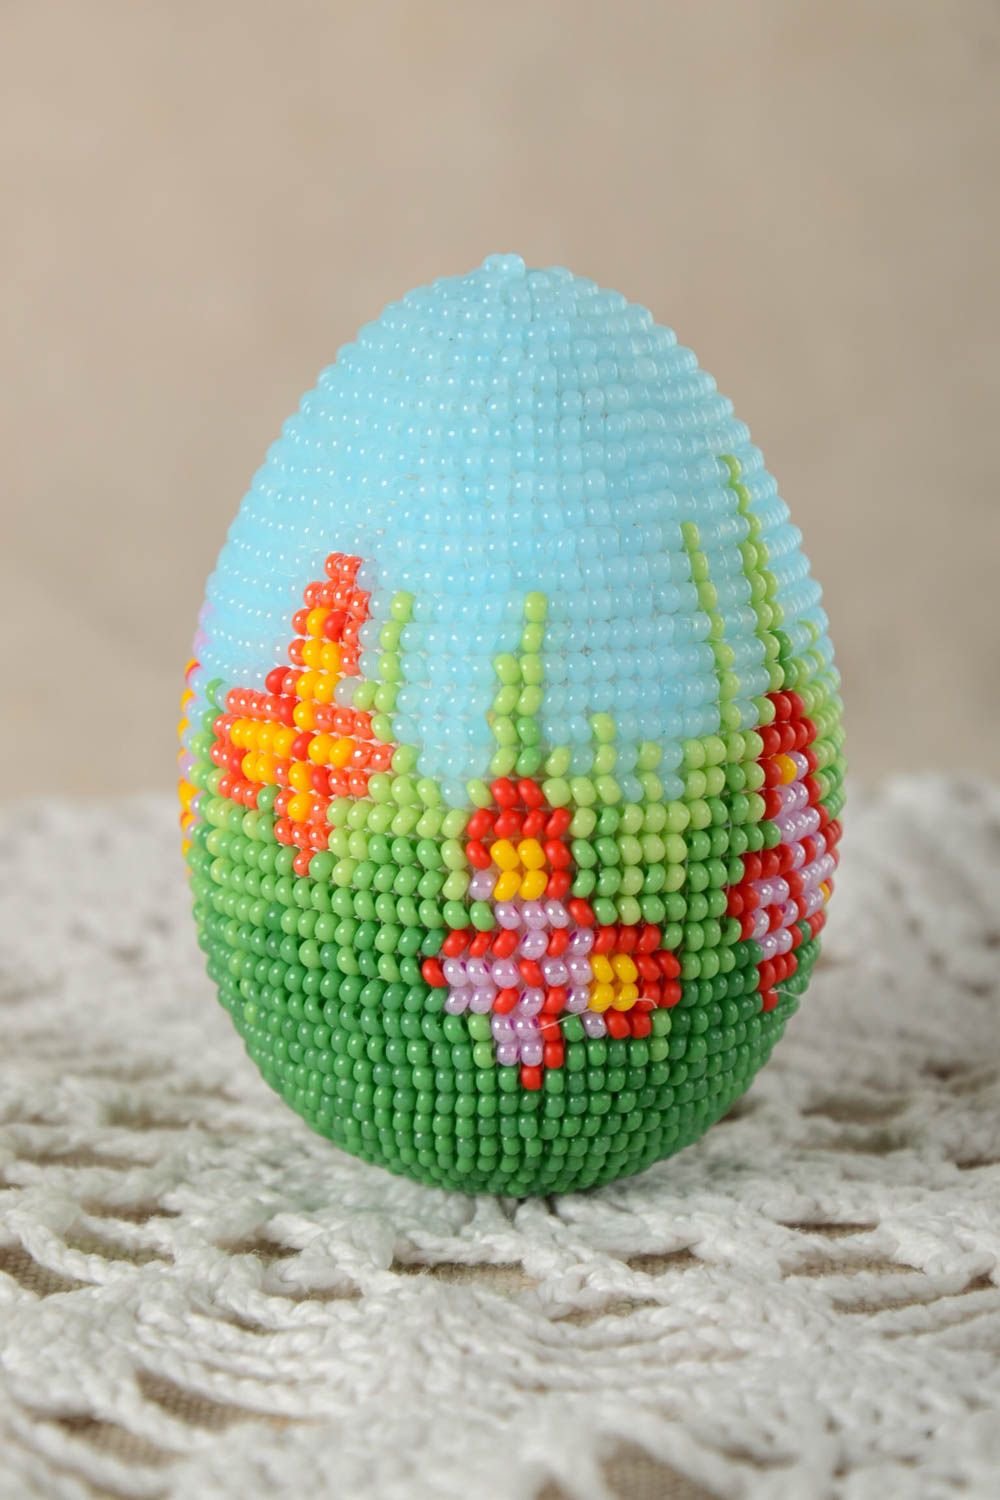 Изделие хэнд мейд пасхальное яйцо красивое необычное пасхальный декор яркий фото 1